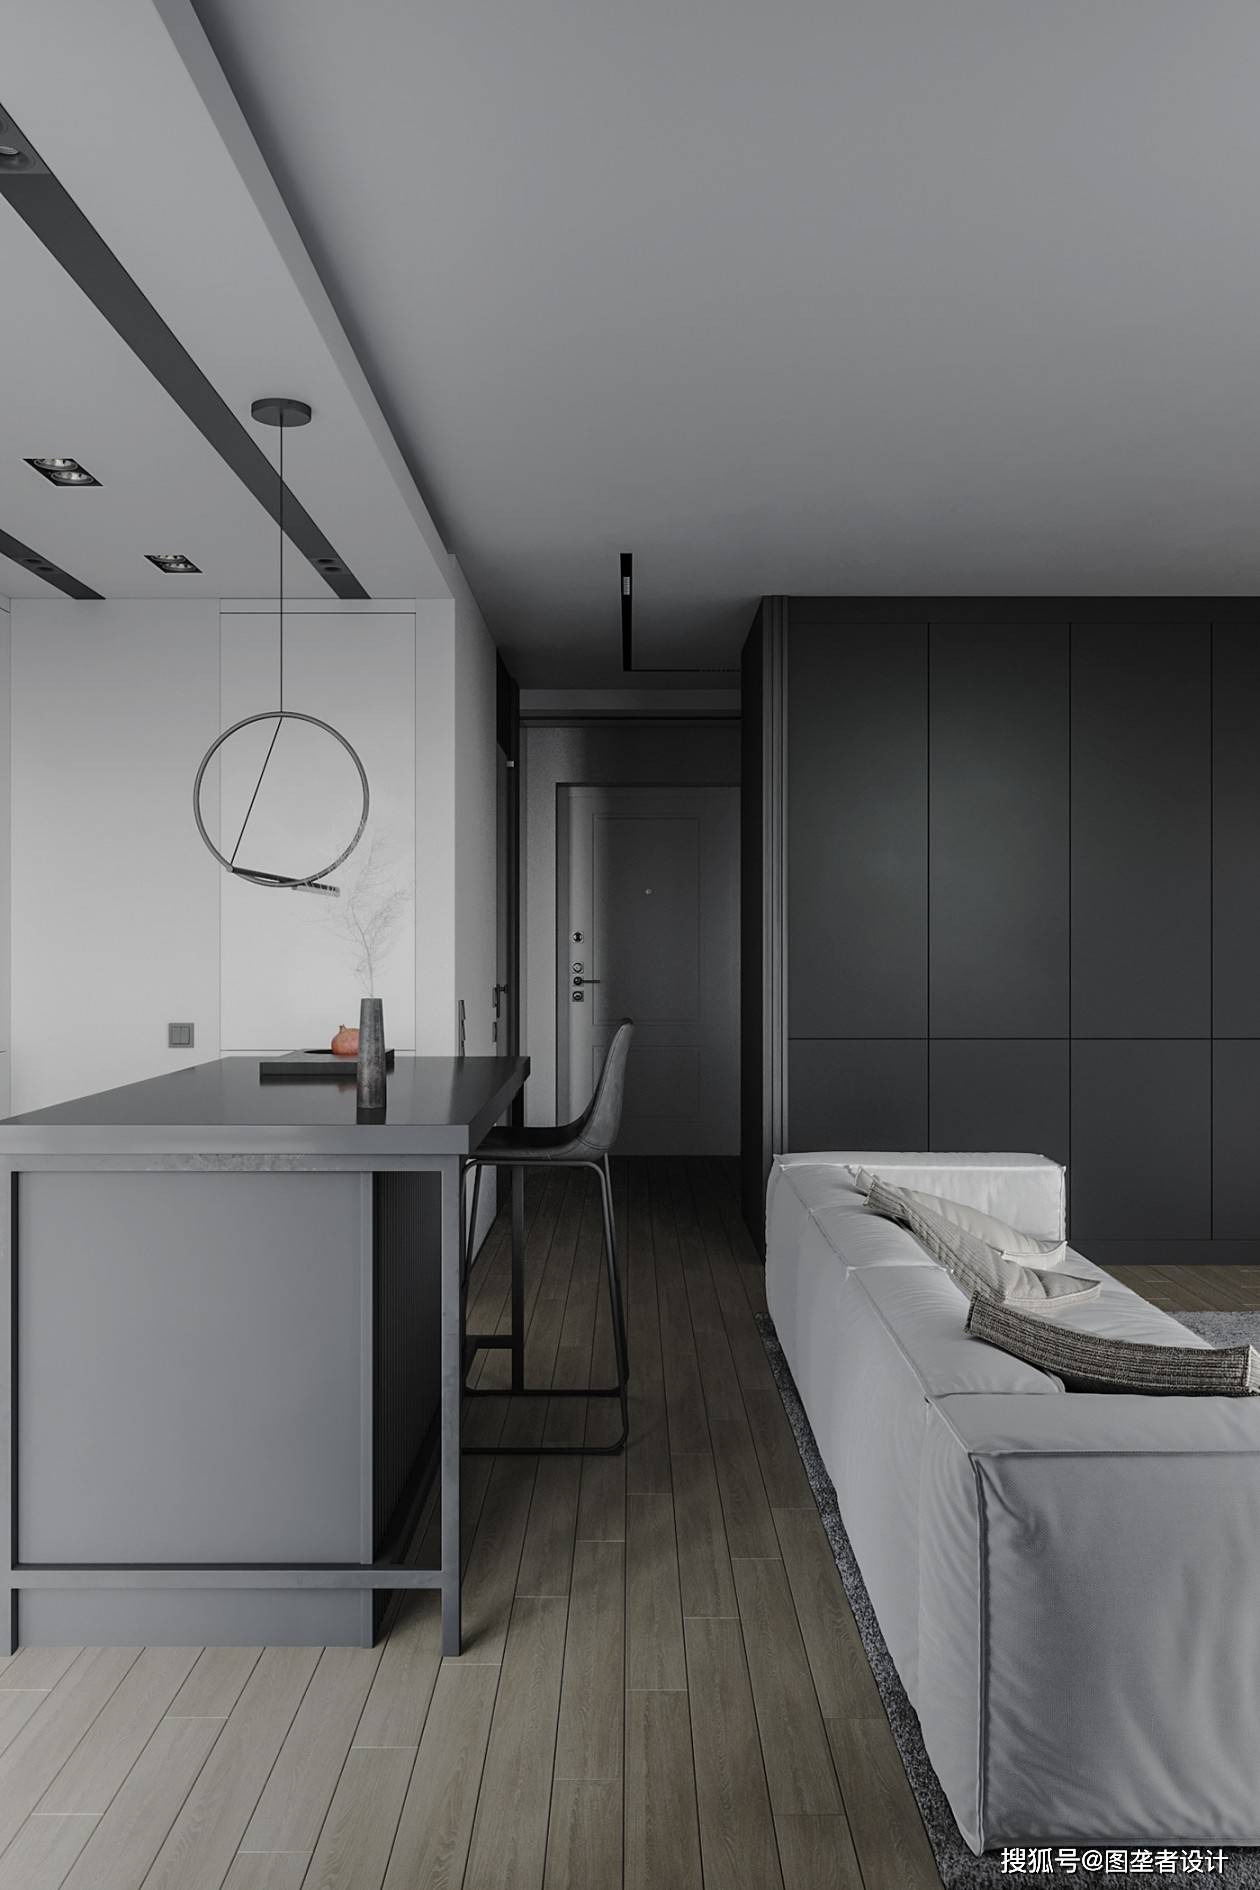 家居装修,风格是关键,家居从客厅简单精致,大面积白墙搭配灰色沙发,加